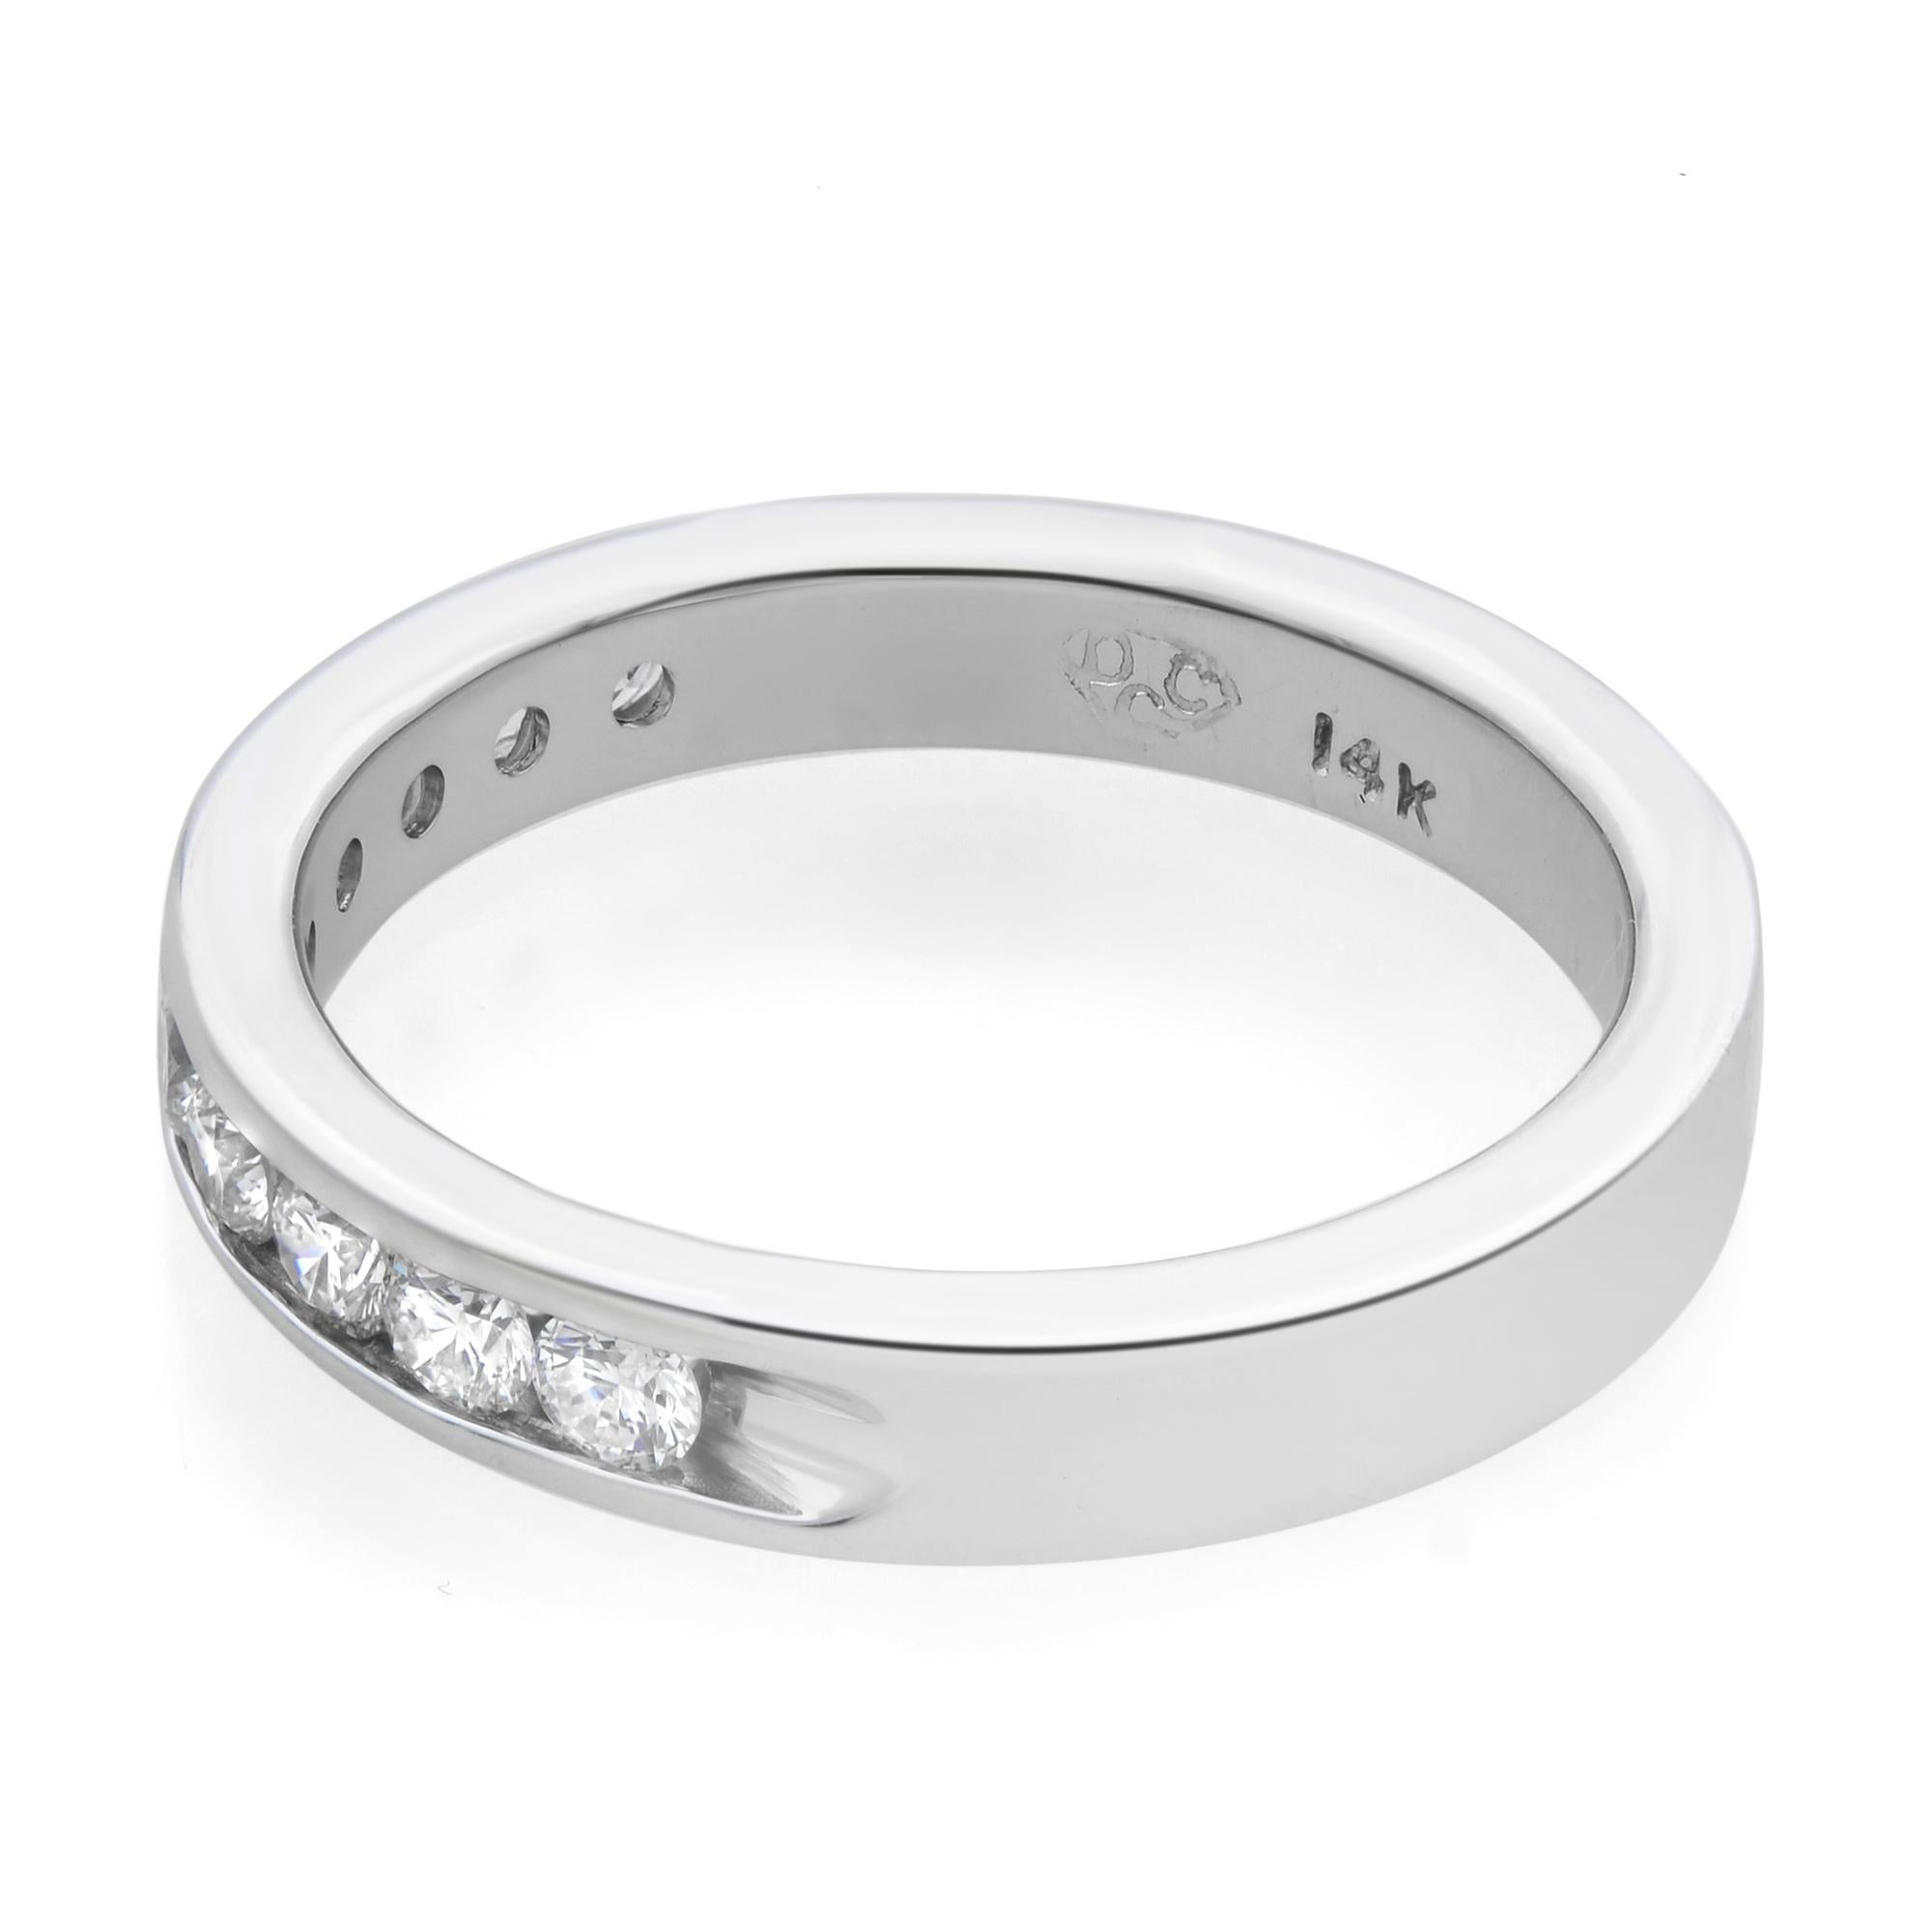 Modern Rachel Koen Channel Set Diamond Wedding Band Ring 14k White Gold 0.50cttw For Sale